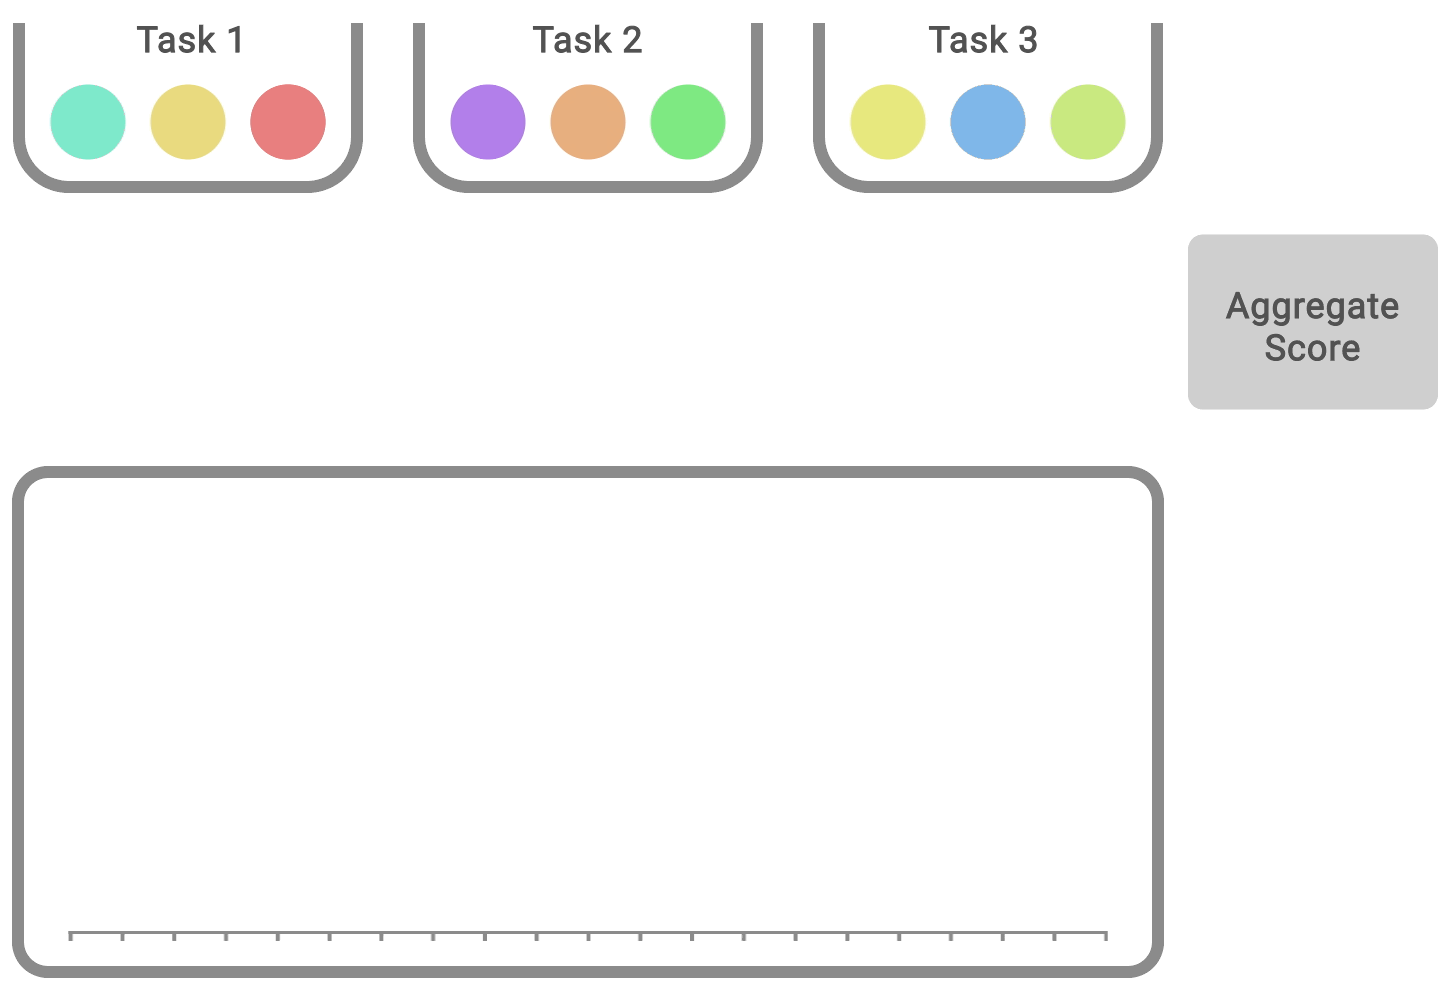 Figure 3. Pour chaque tâche, les boules de couleur indiquent les scores obtenus lors des différentes séquences